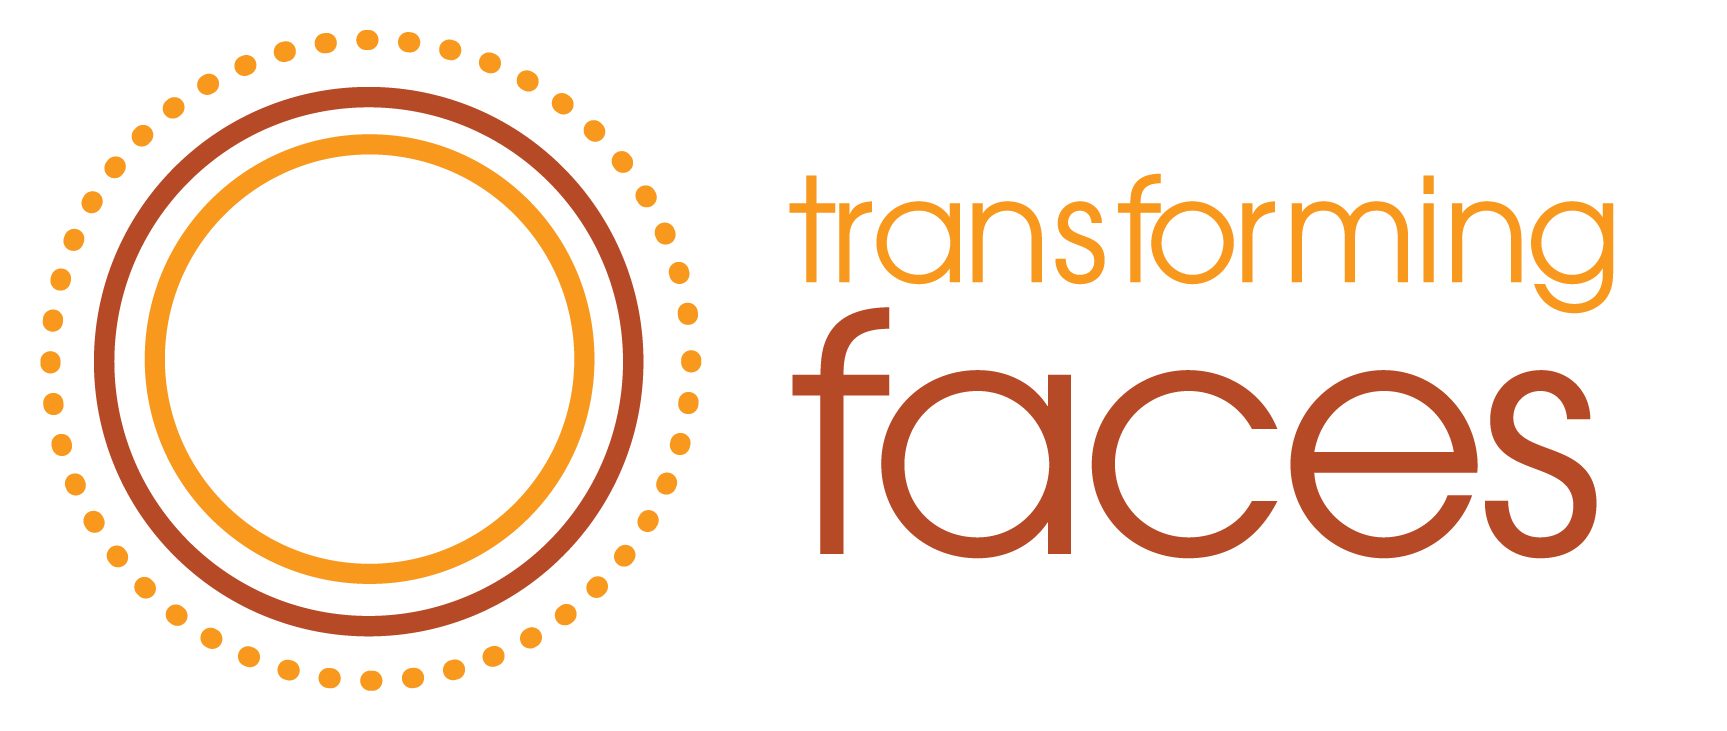 Faces Logo - transforming faces logo (1)